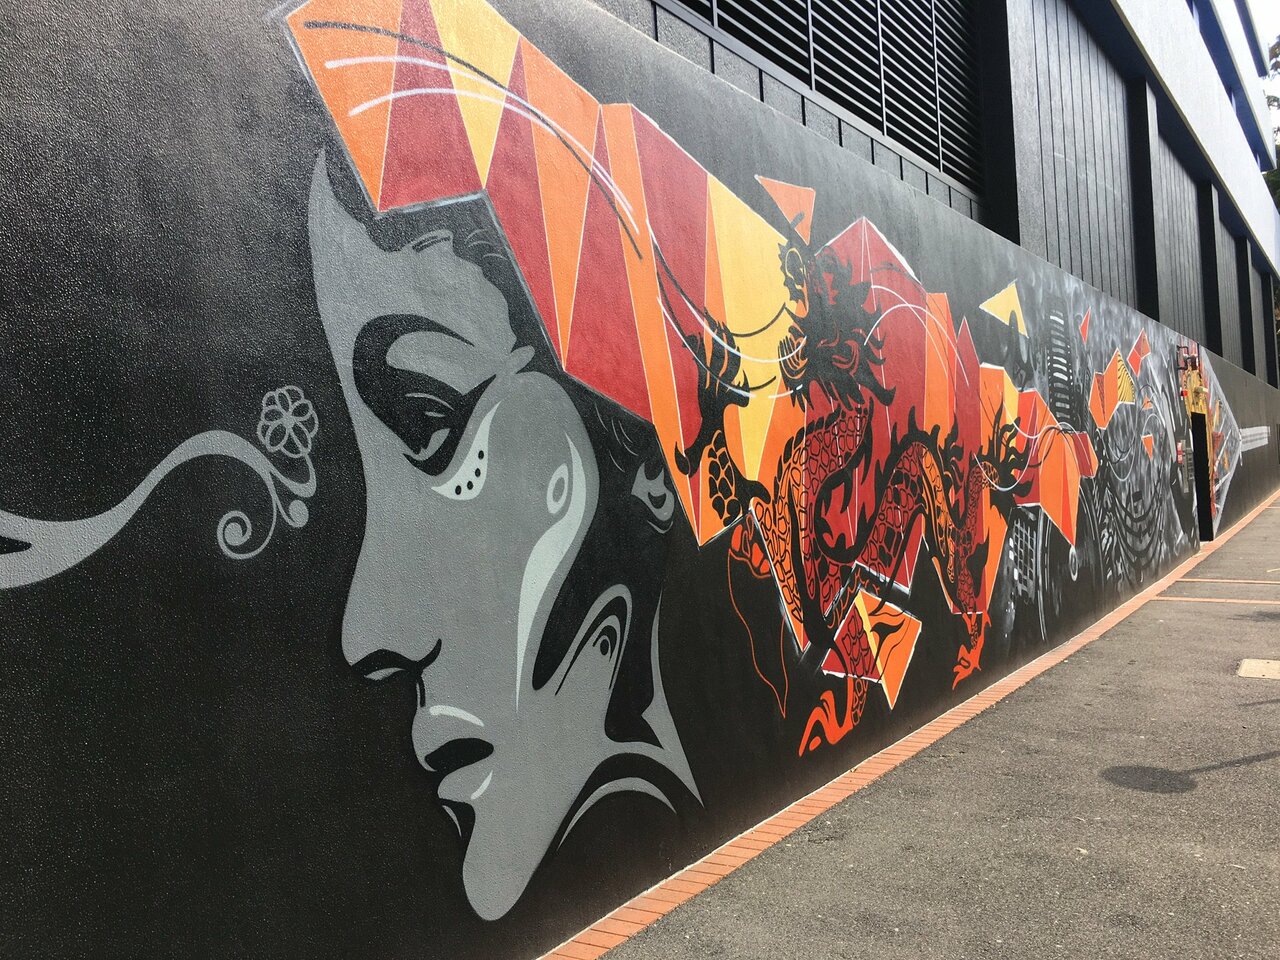 Huge wall of street art in Brisbane #streetart #street #art #graffiti #dragon #fire https://t.co/vZtqKnUdSa